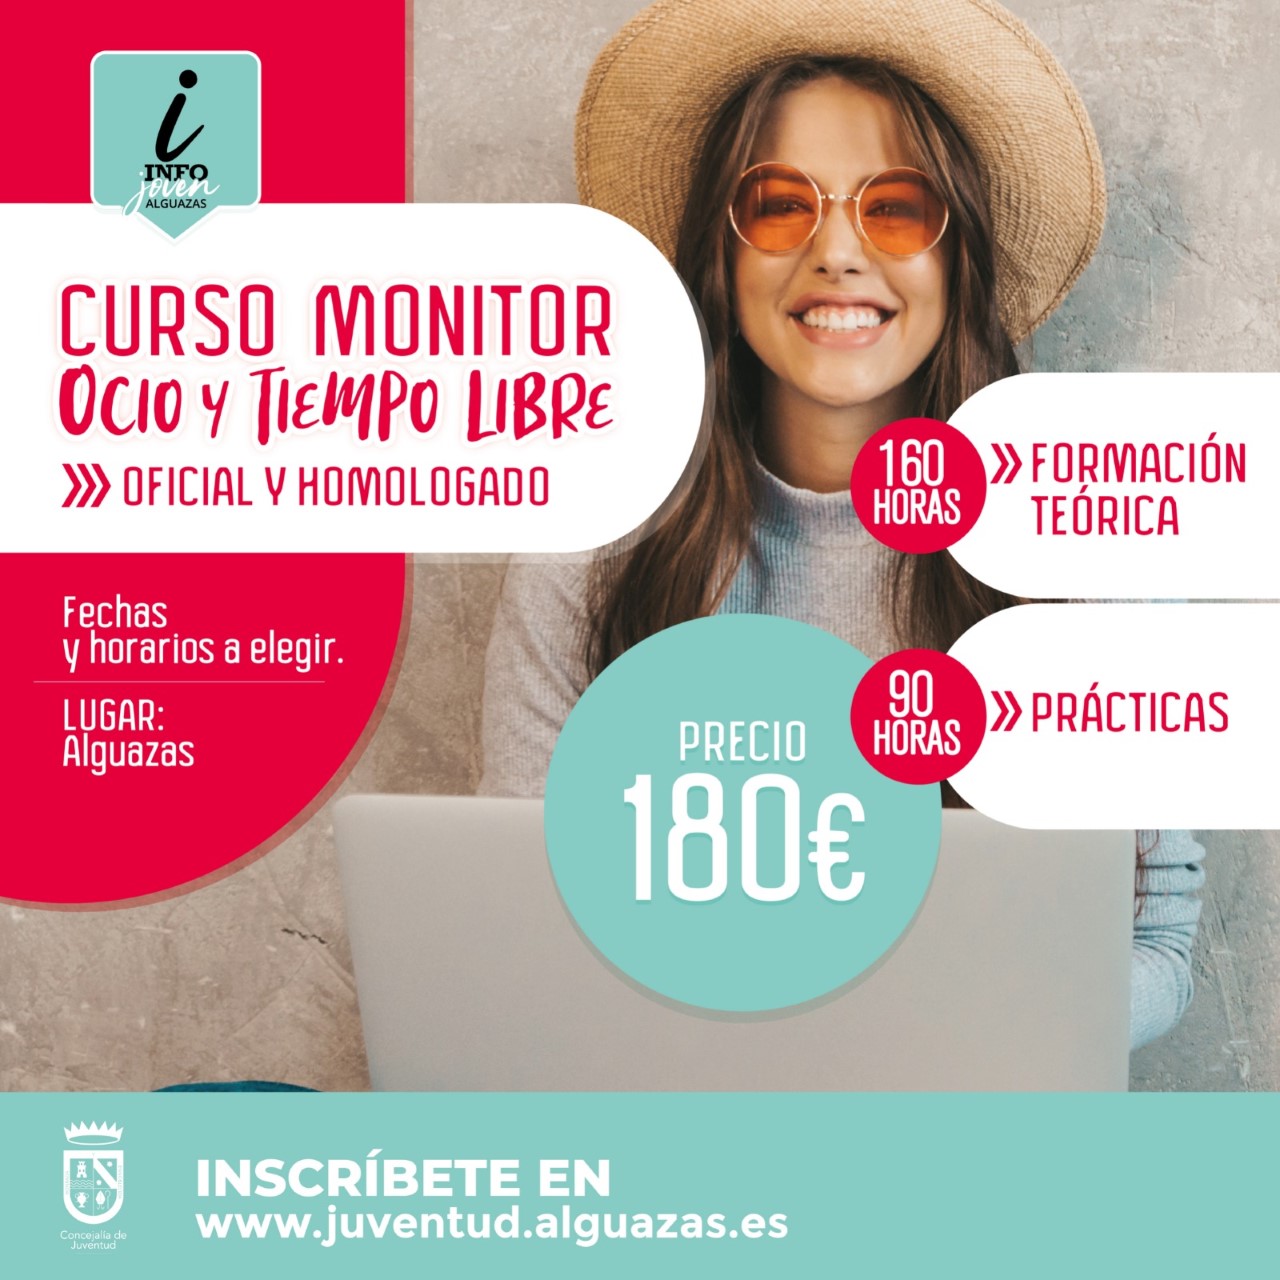 Curso de Monitor de Ocio y Tiempo Libre en Alguazas